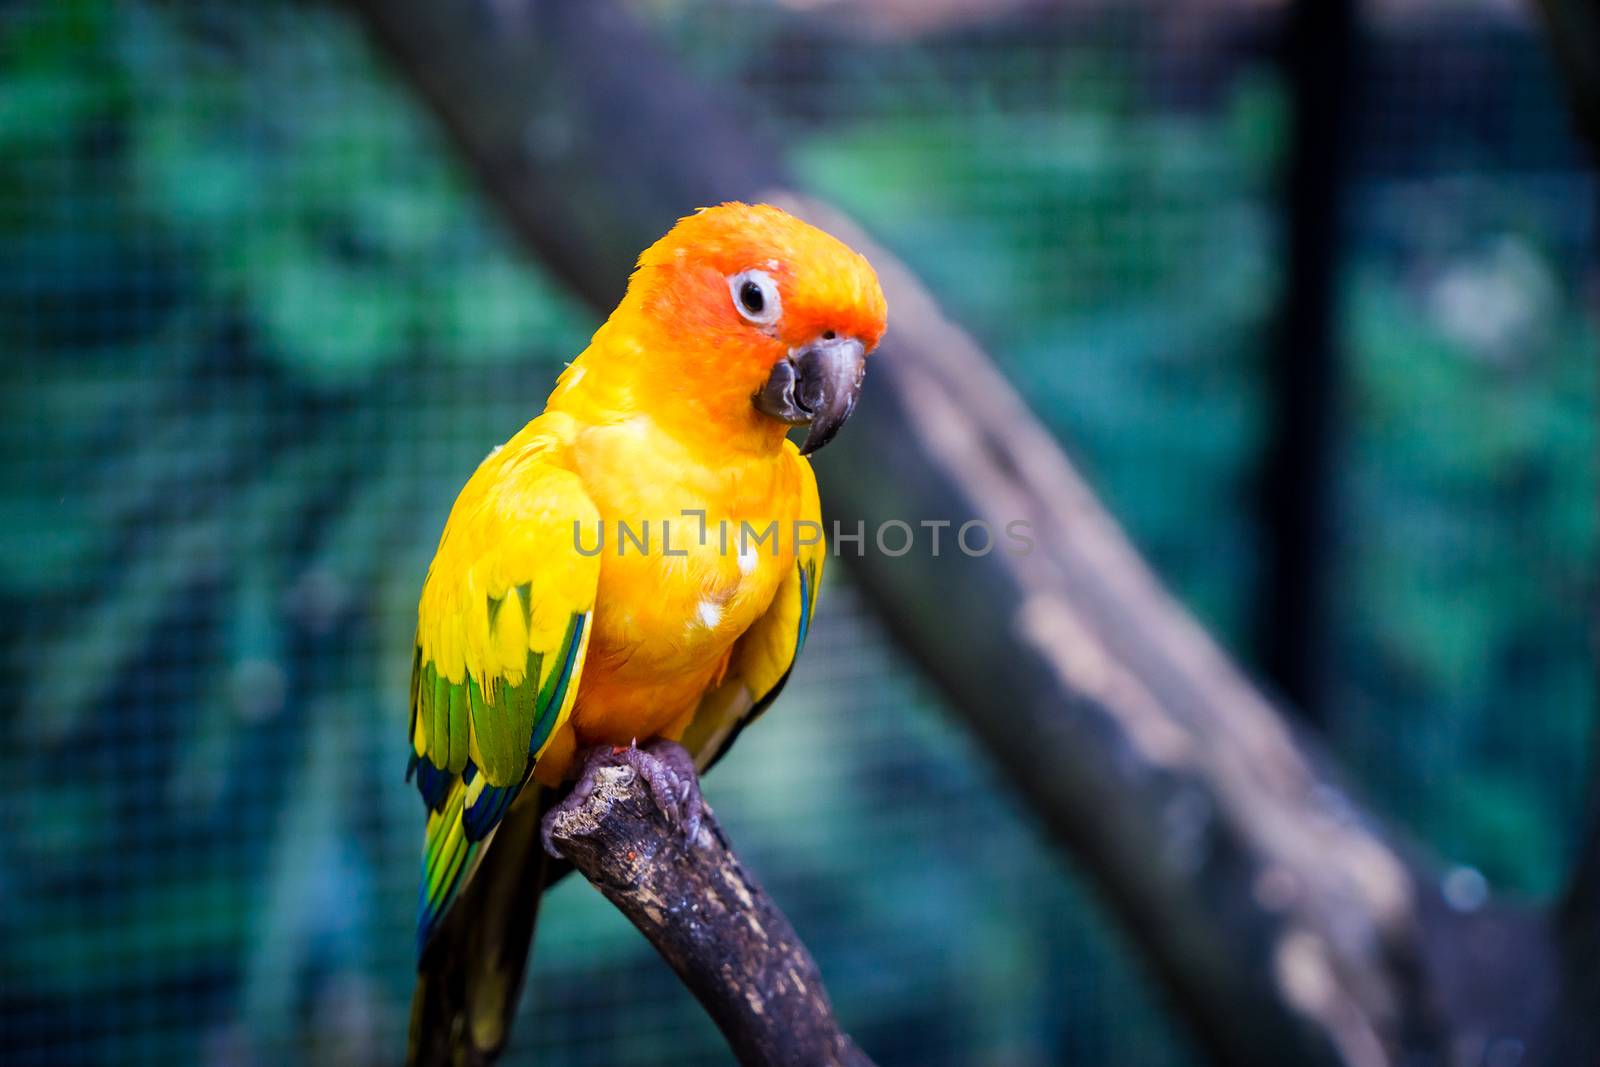 Orange love bird standing on wooden stick